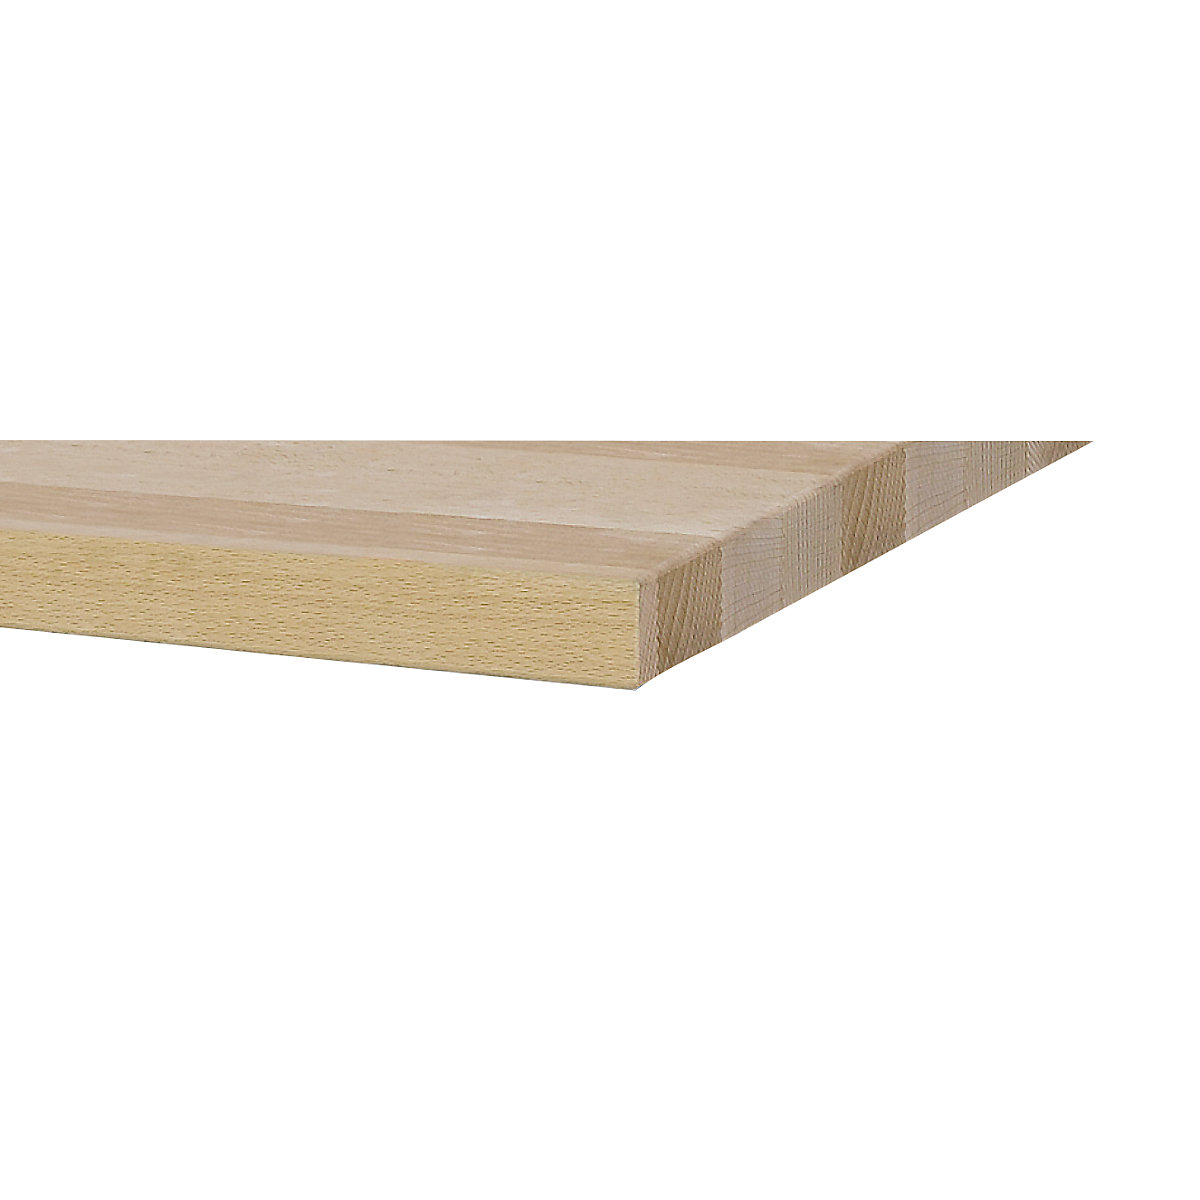 ANKE – Delovna miza širine 2800 mm, izvedba z ogrodjem (Slika izdelka 3)